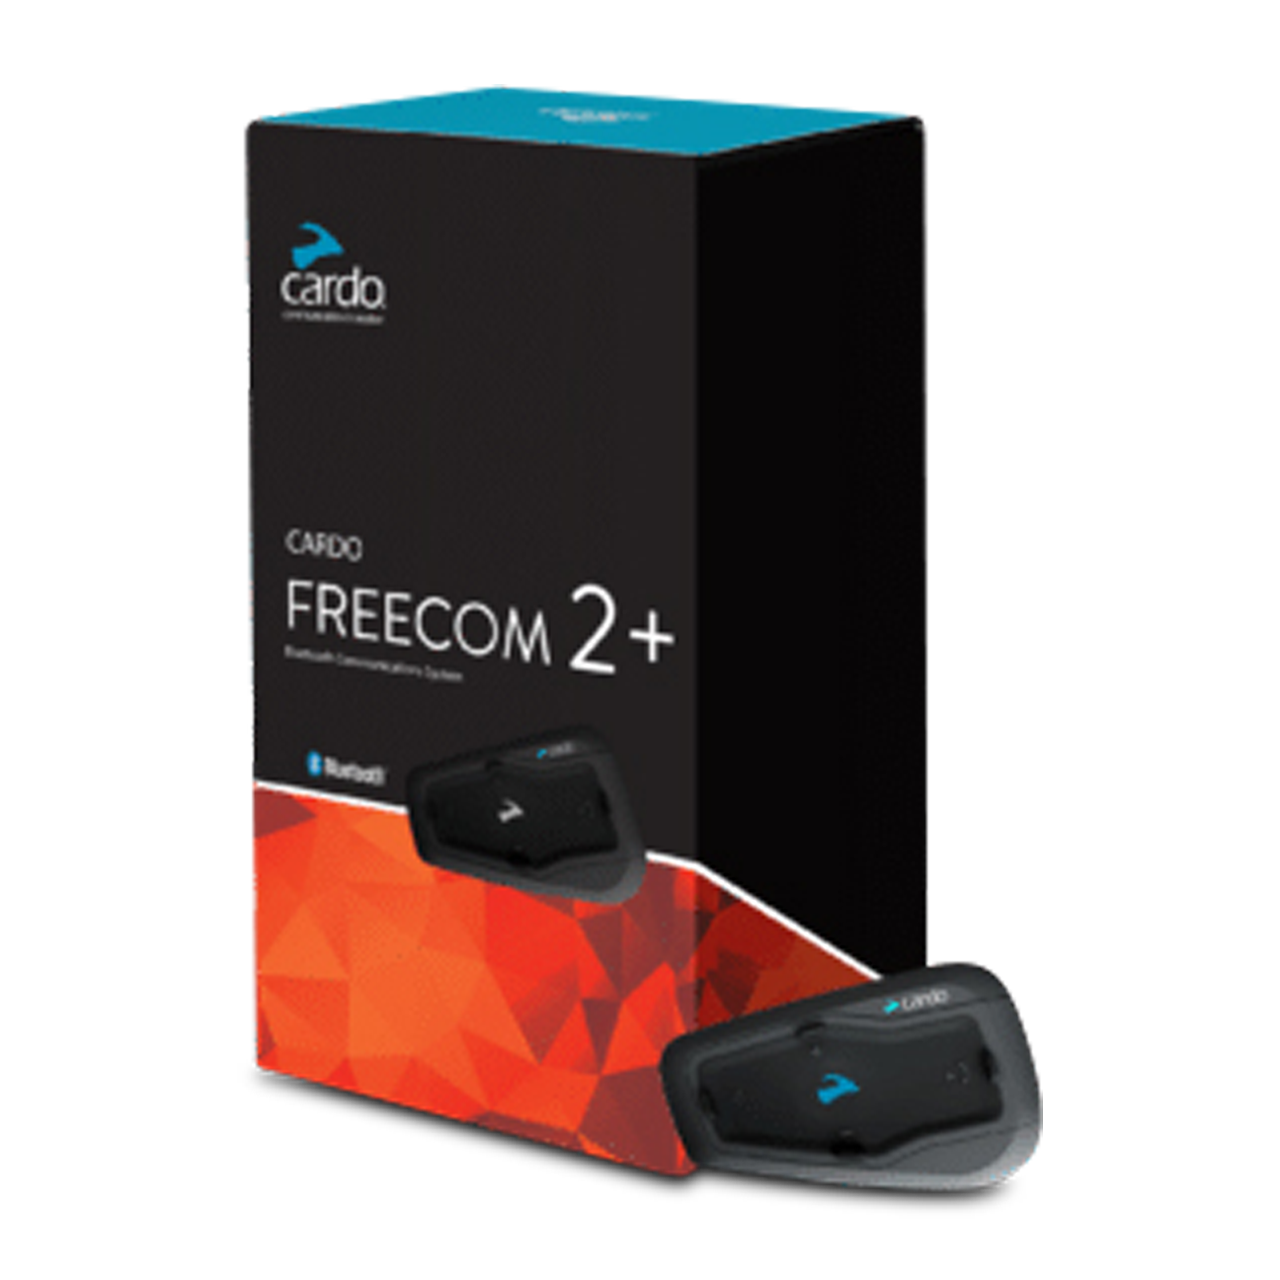 Cardo Freecom 2+ Intercom - Lowest Price Guarantee | 24MX